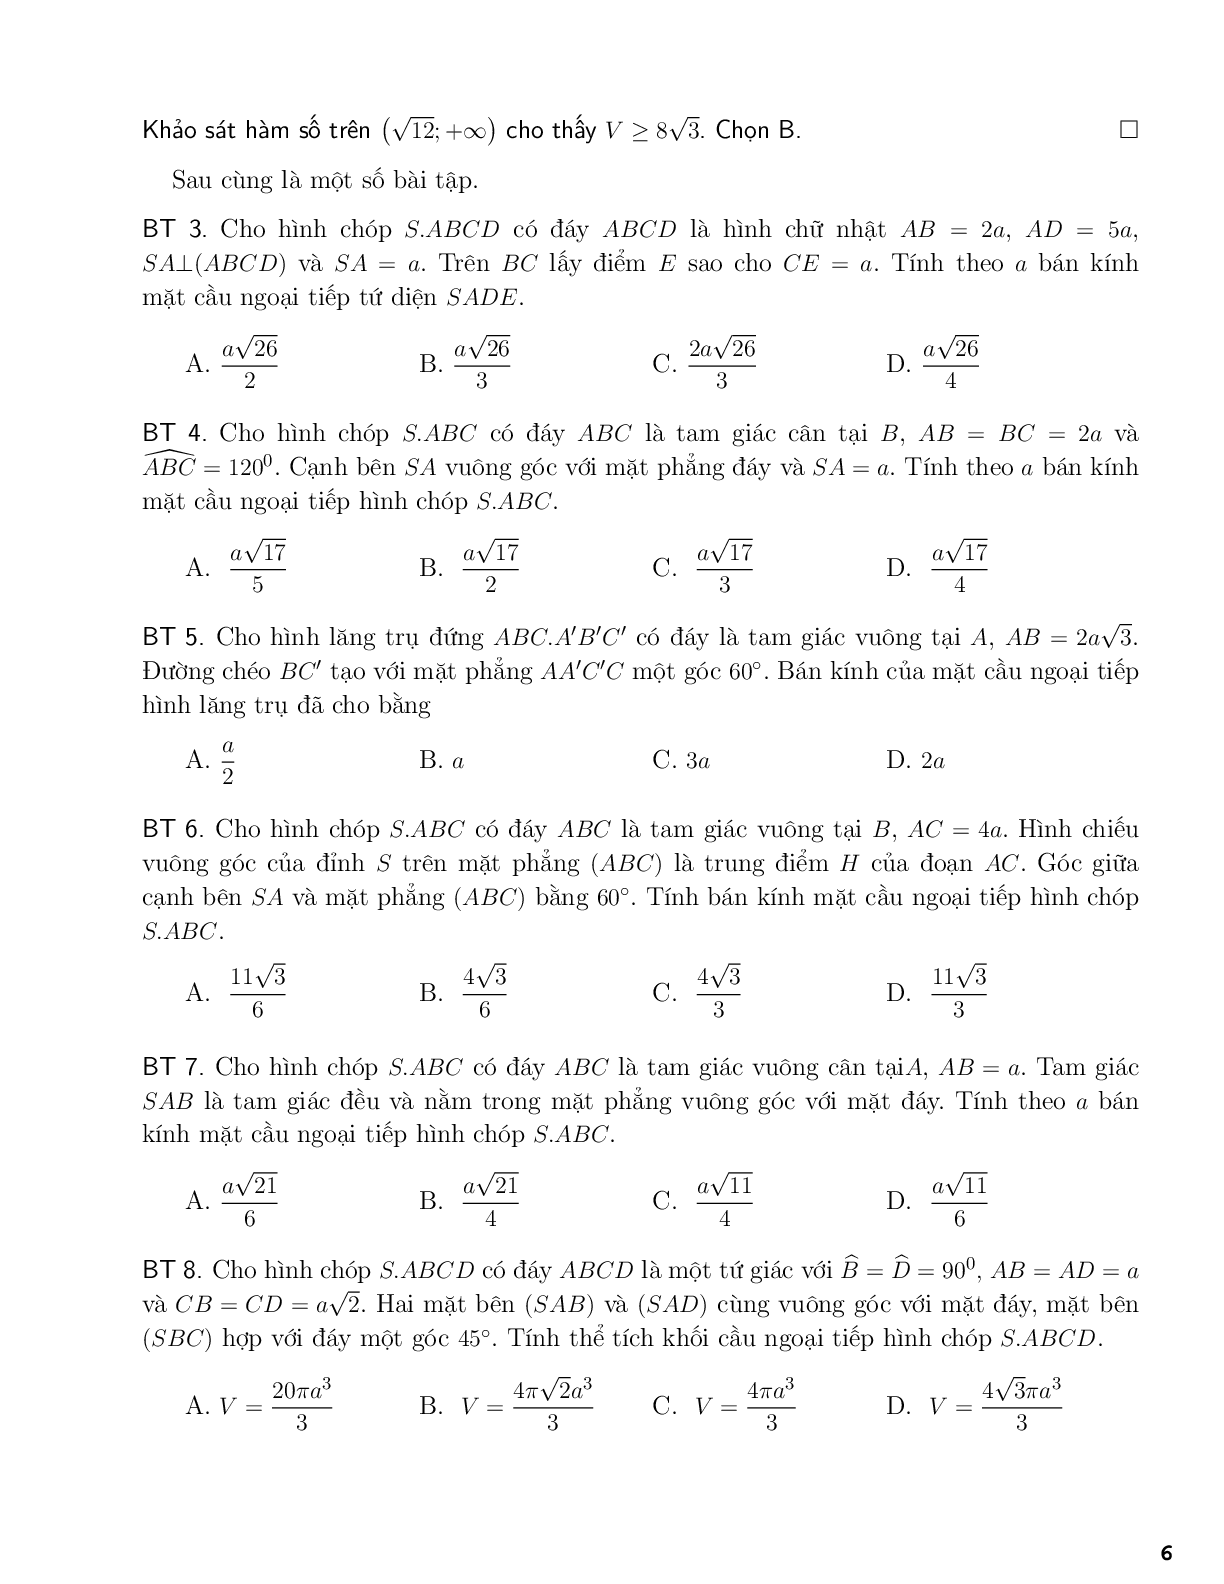 Một số công thức tính bán kính mặt cầu (trang 6)